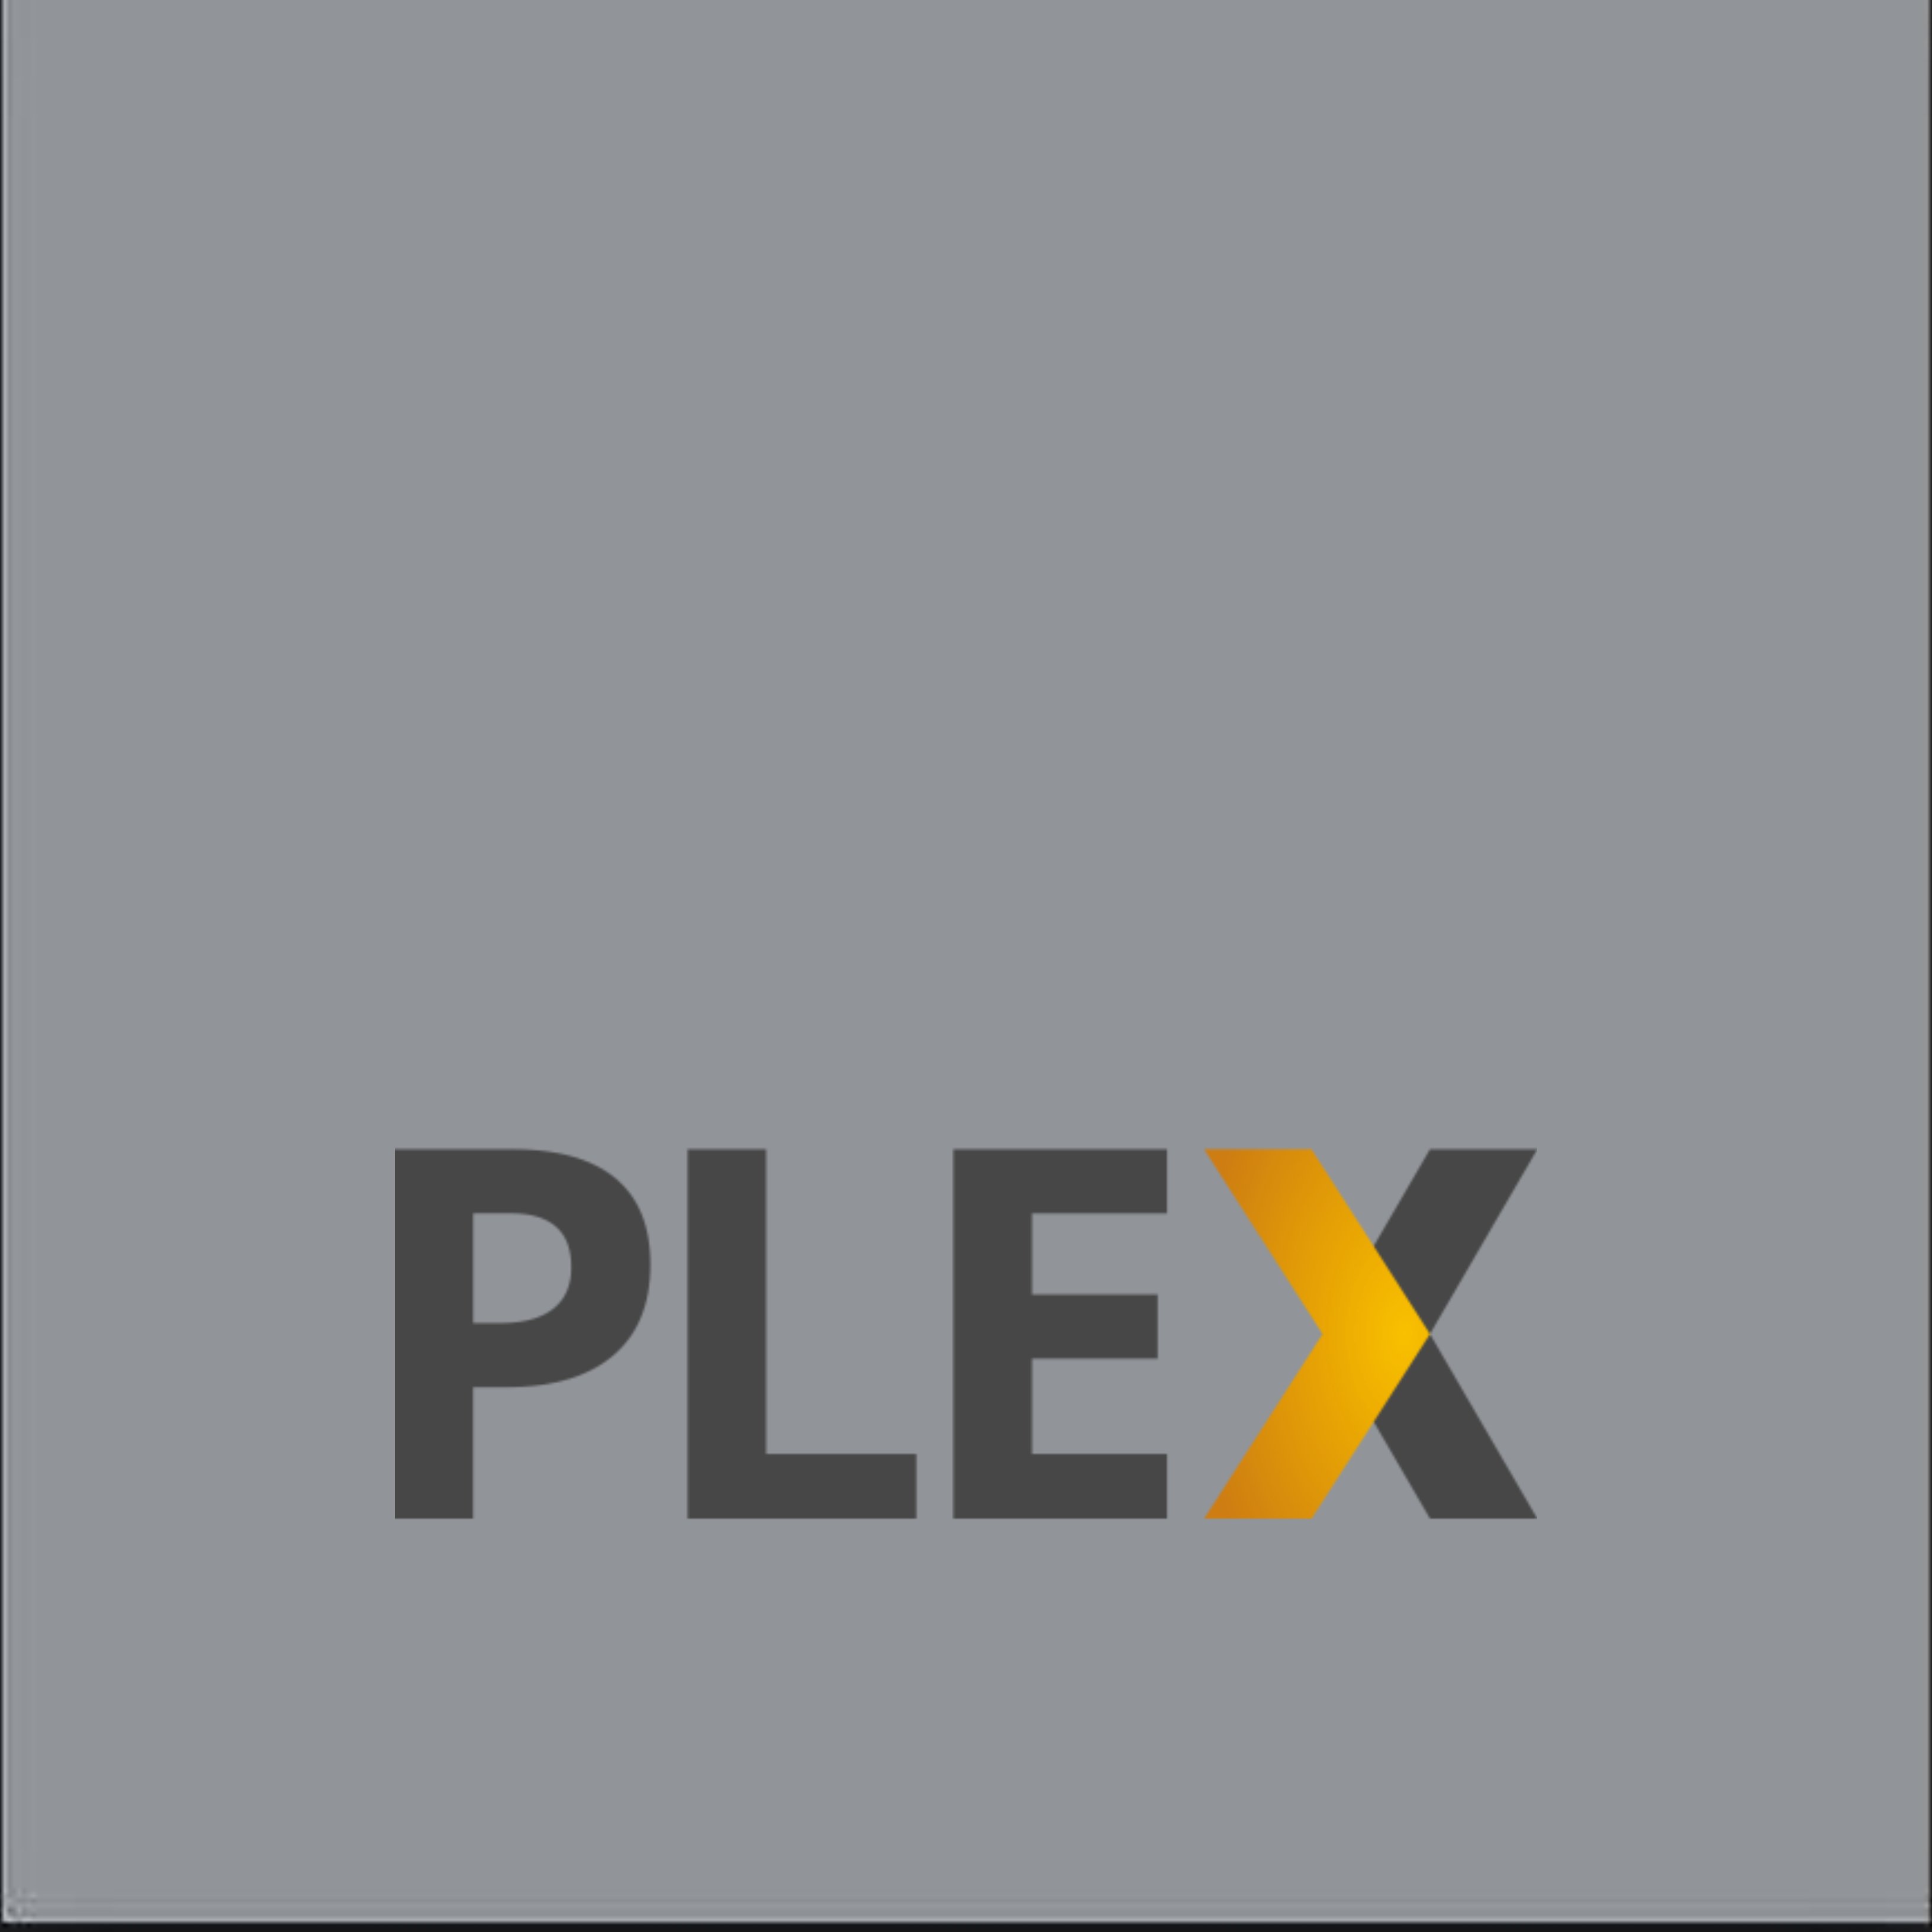 Plex és ja una alternativa mundial gratuïta i amb anuncis a Netflix i HBO